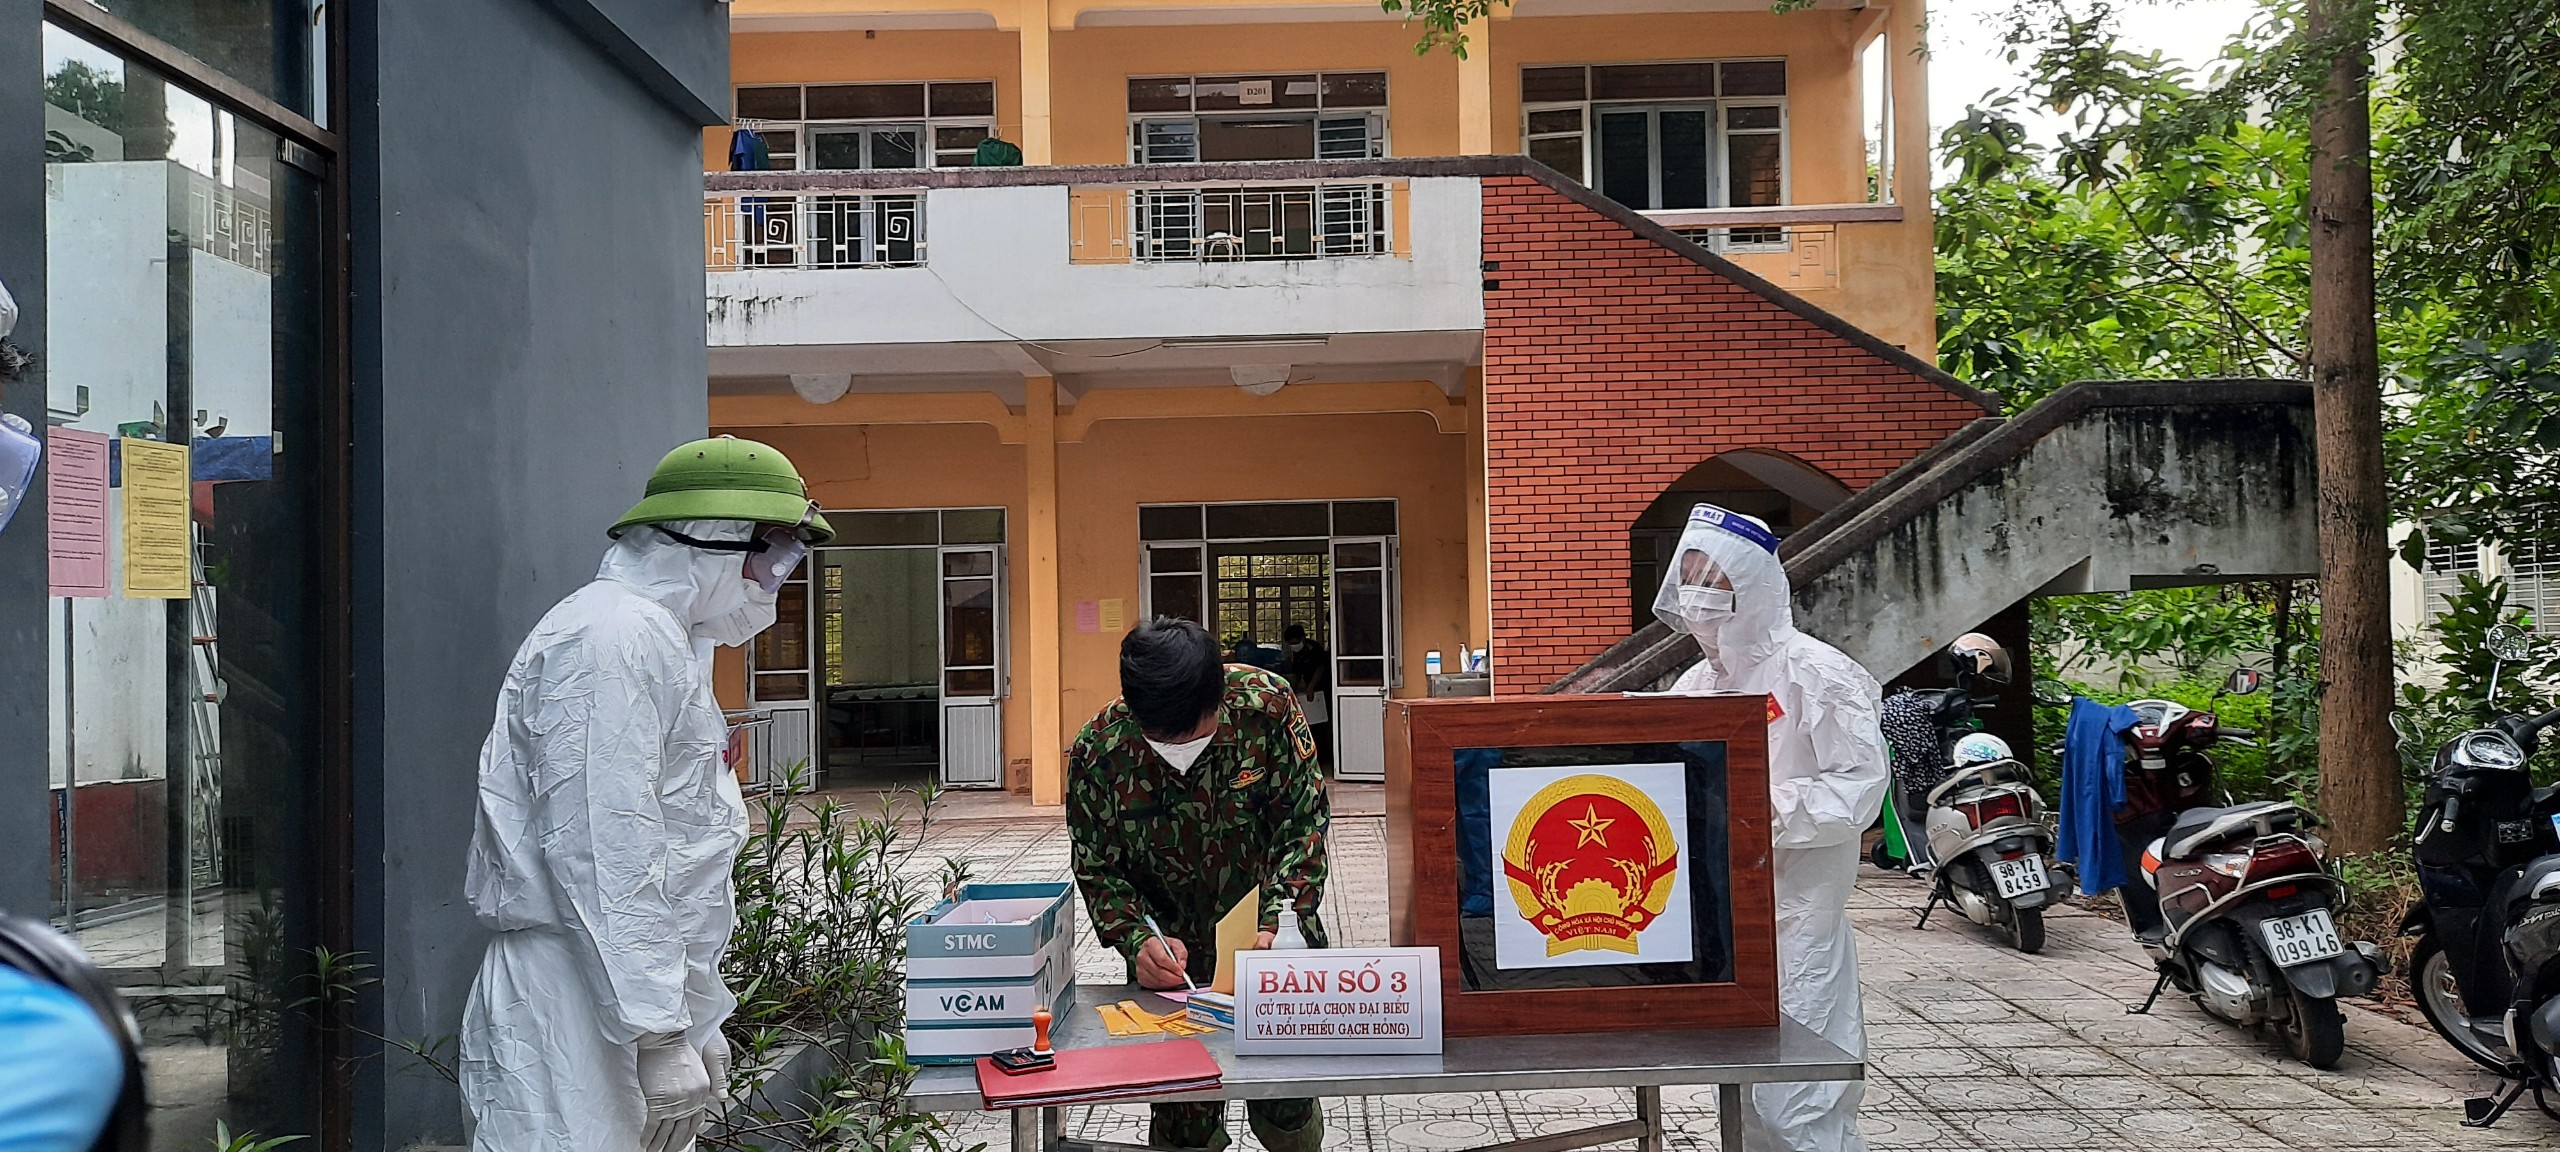 Những hình ảnh về bầu cử ở khu cách ly tại tỉnh Bắc Giang - Ảnh 1.